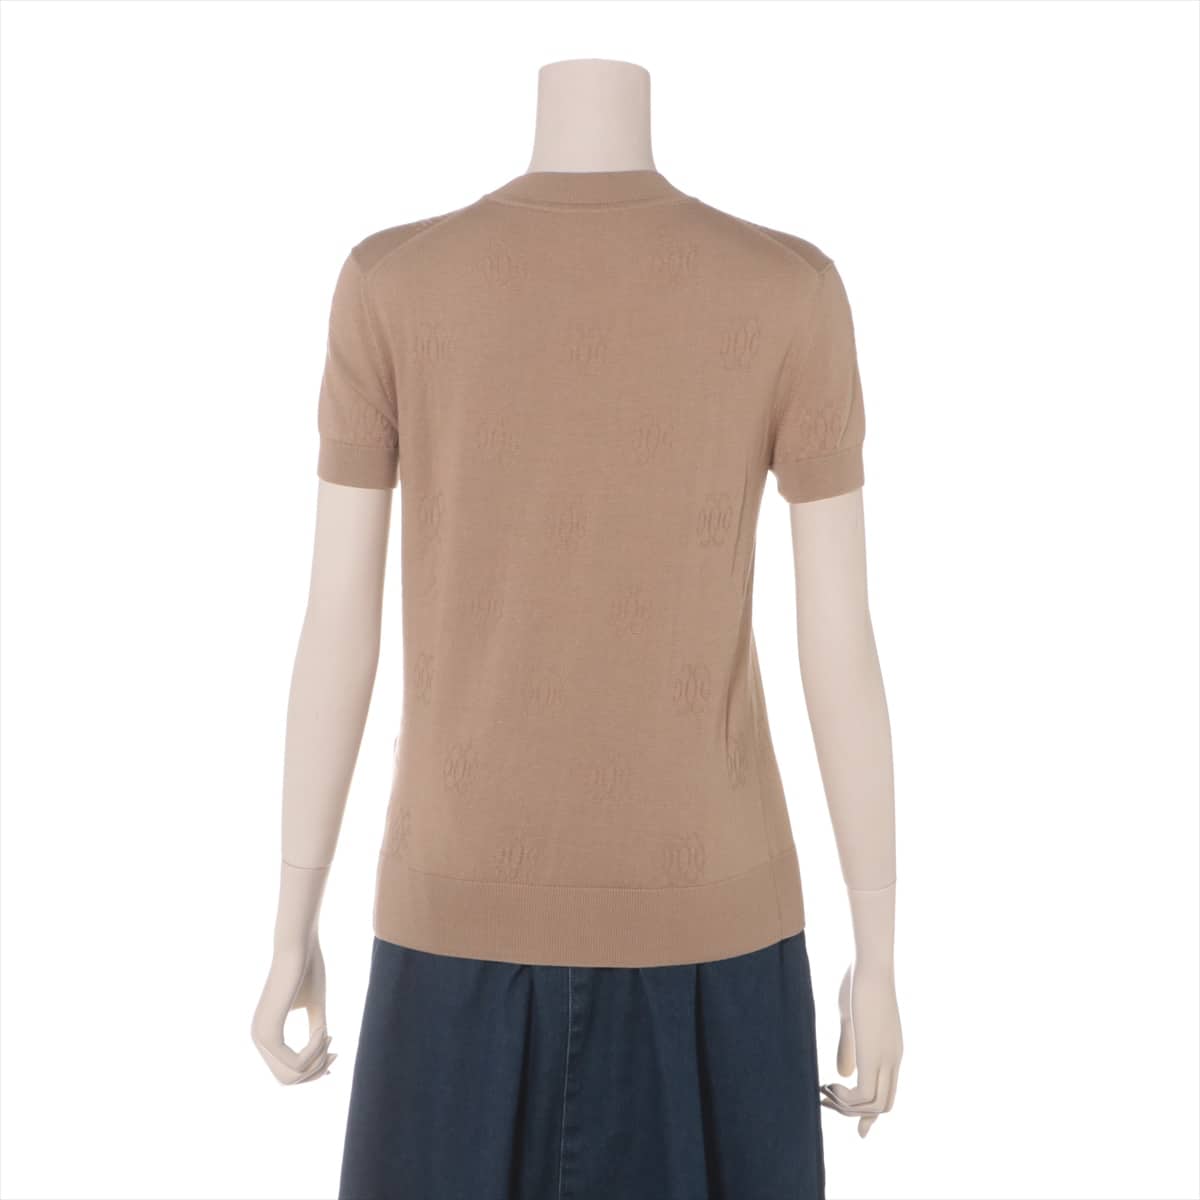 Hermès Cotton & silk Short Sleeve Knitwear 34 Ladies' Beige